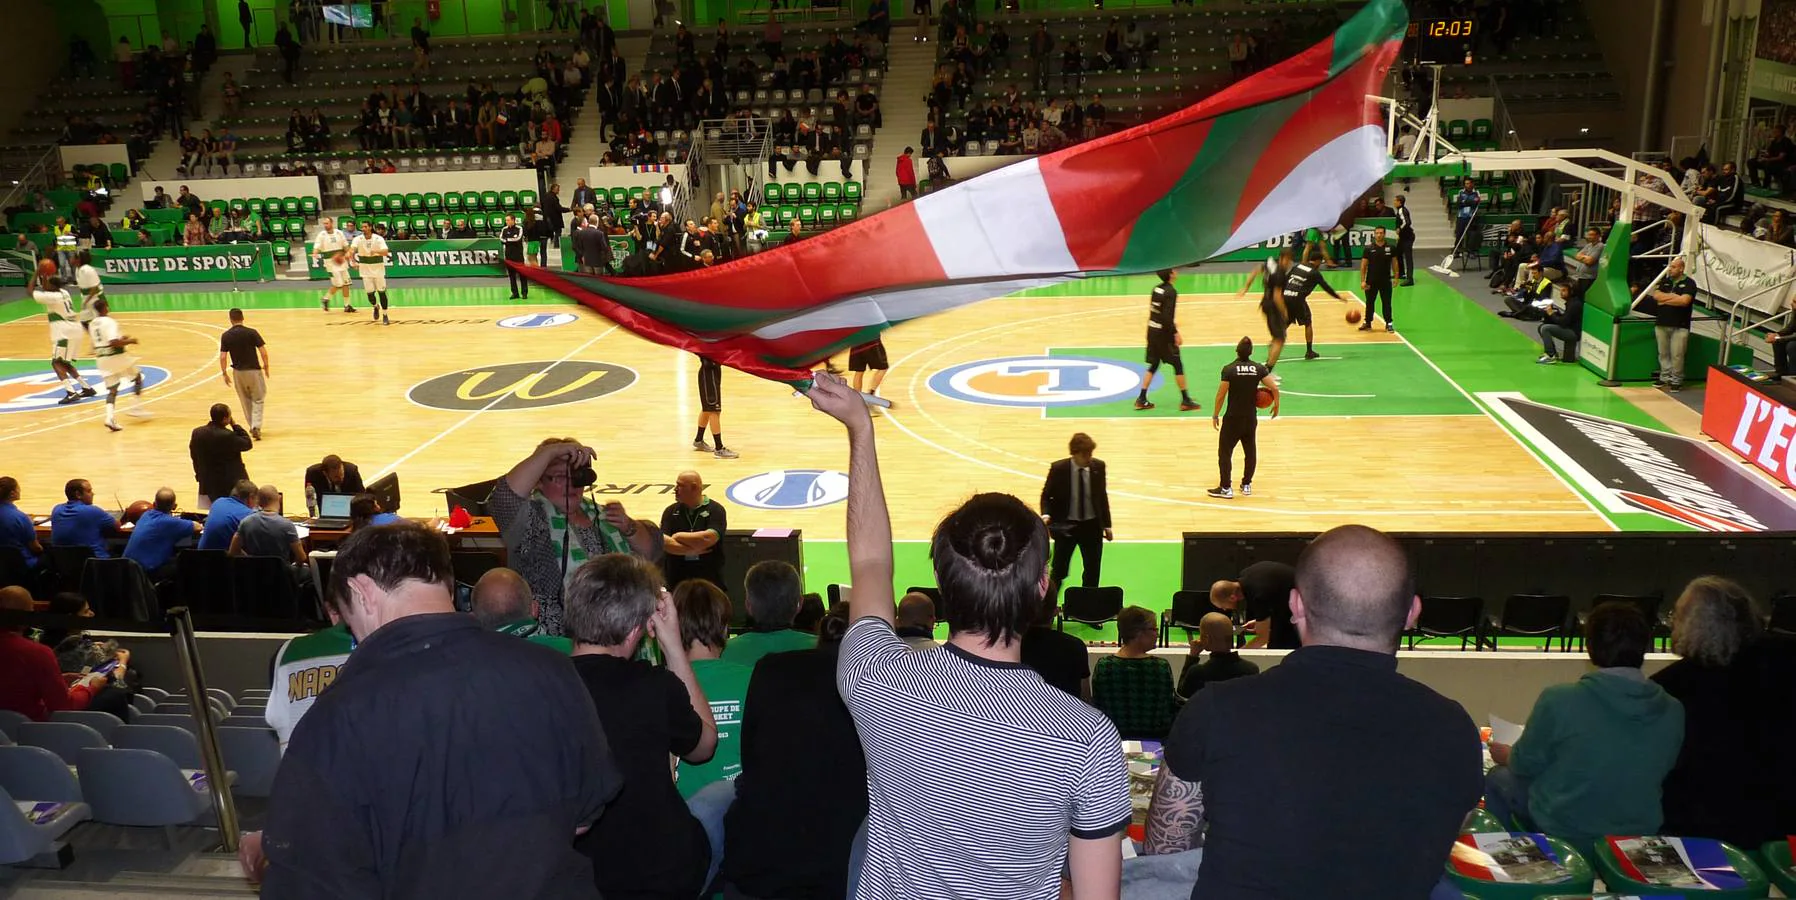 Las mejores imágenes del partido Nanterre-Bilbao Basket